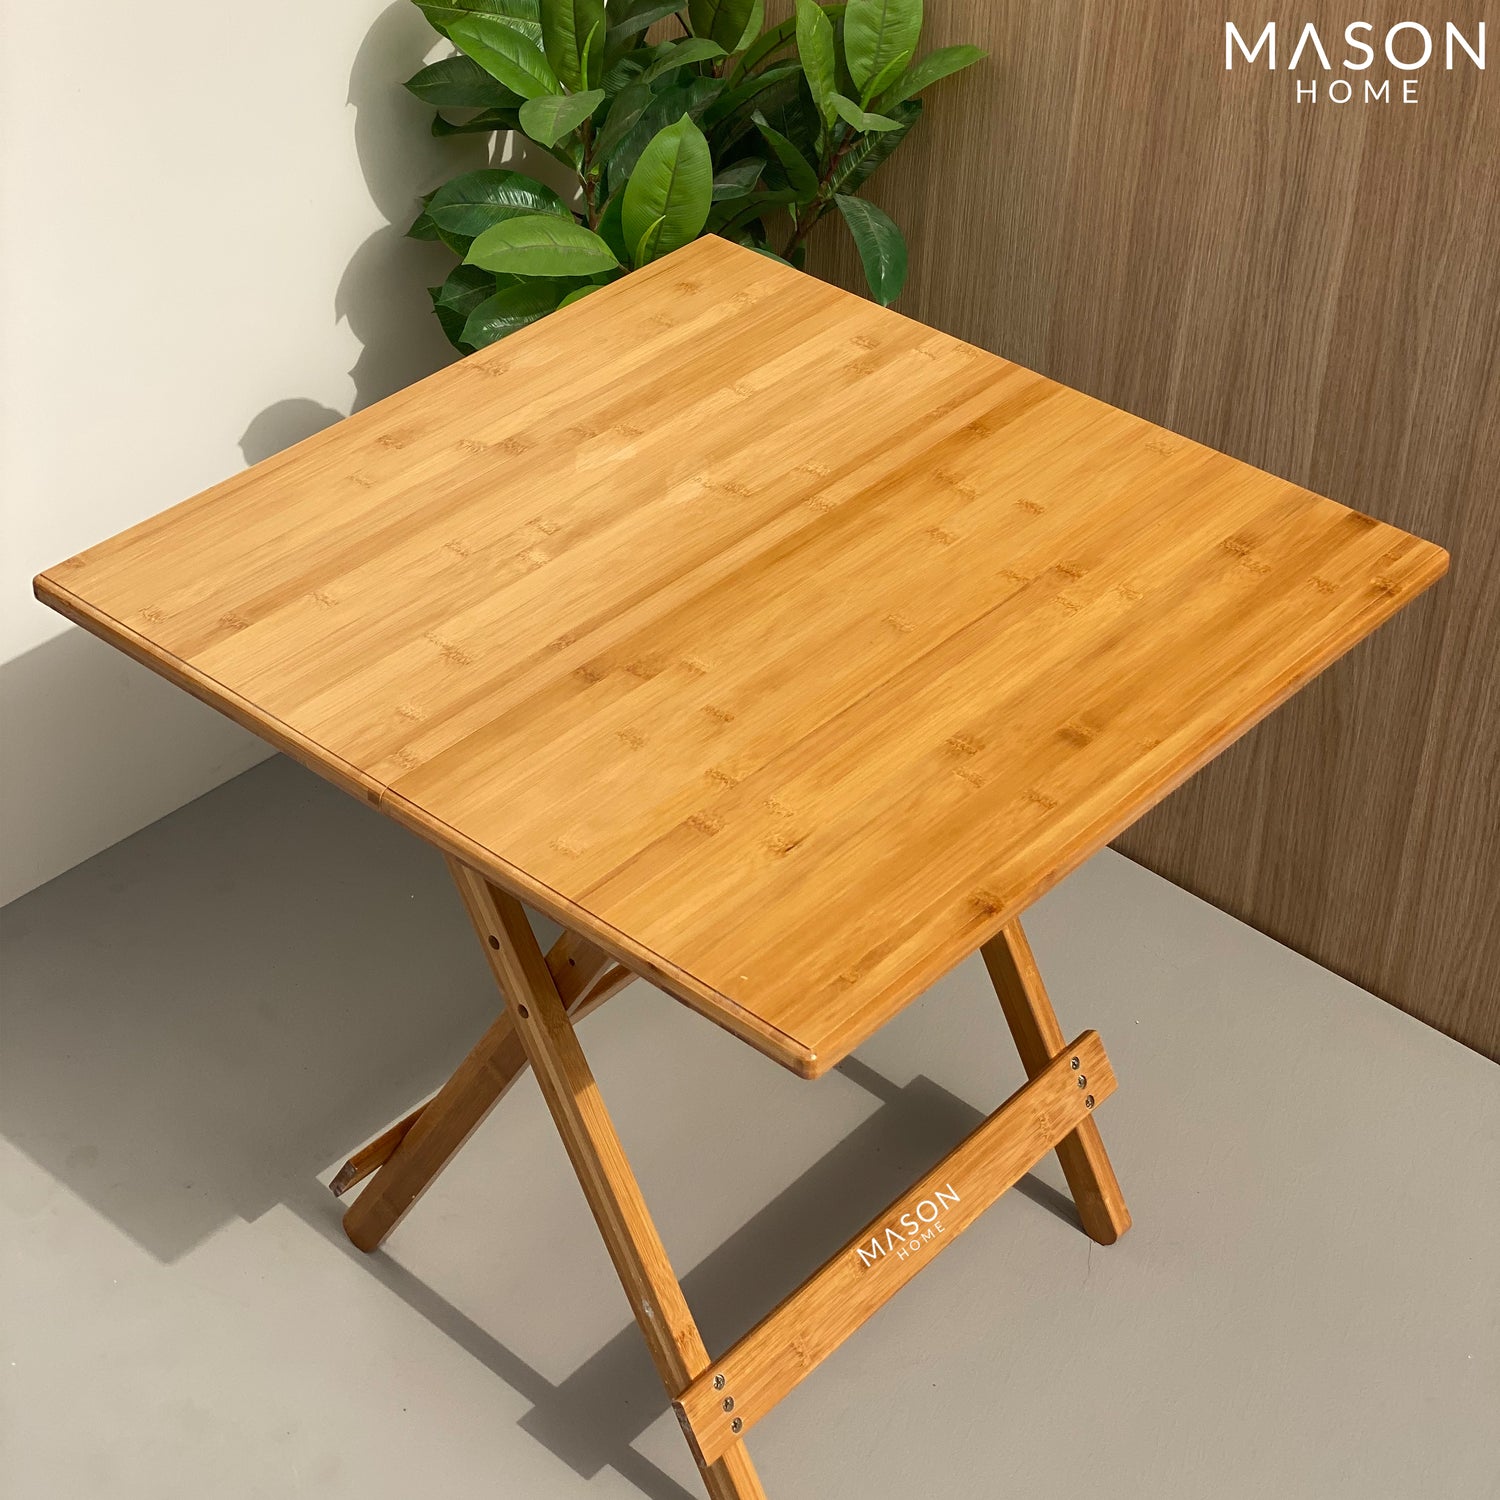 ERZA FOLDING TABLE - BIG - Mason Home by Amarsons - Lifestyle &amp; Decor